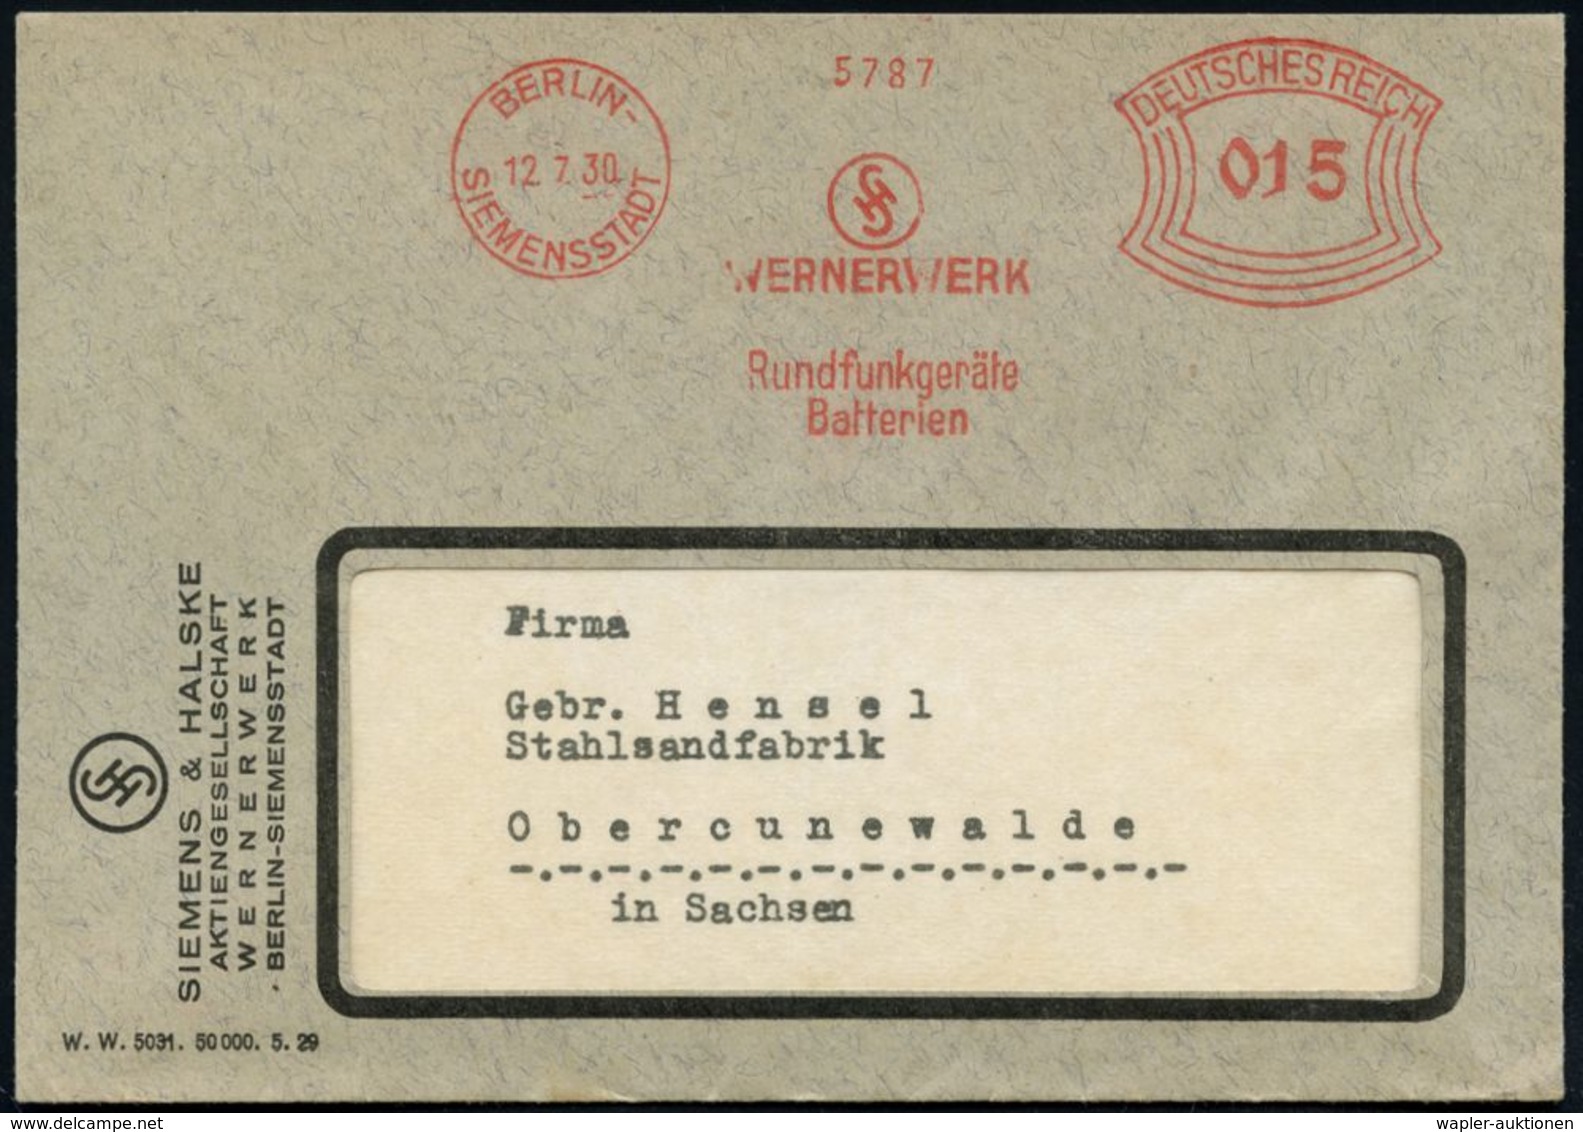 BERLIN-/ SIEMENSSTADT/ WERNERWERK/ Rundfunkgeräte/ Batterien 1930 (12.7.) AFS (Logo) Motivgleicher Firmen-Bf. (Dü.E-1BAh - Non Classés